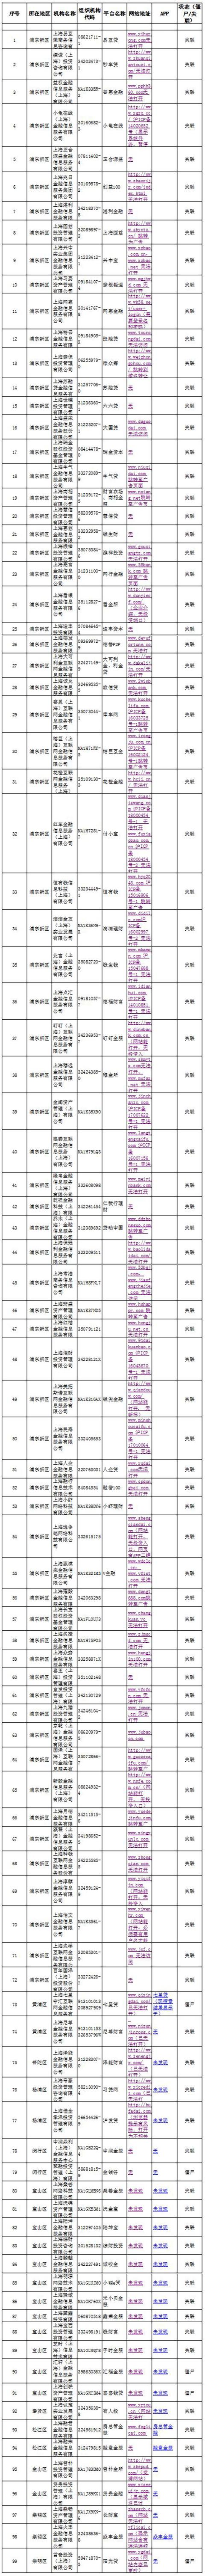 上海发布首批失联网贷机构名单，正常运营平台已降至百家以下